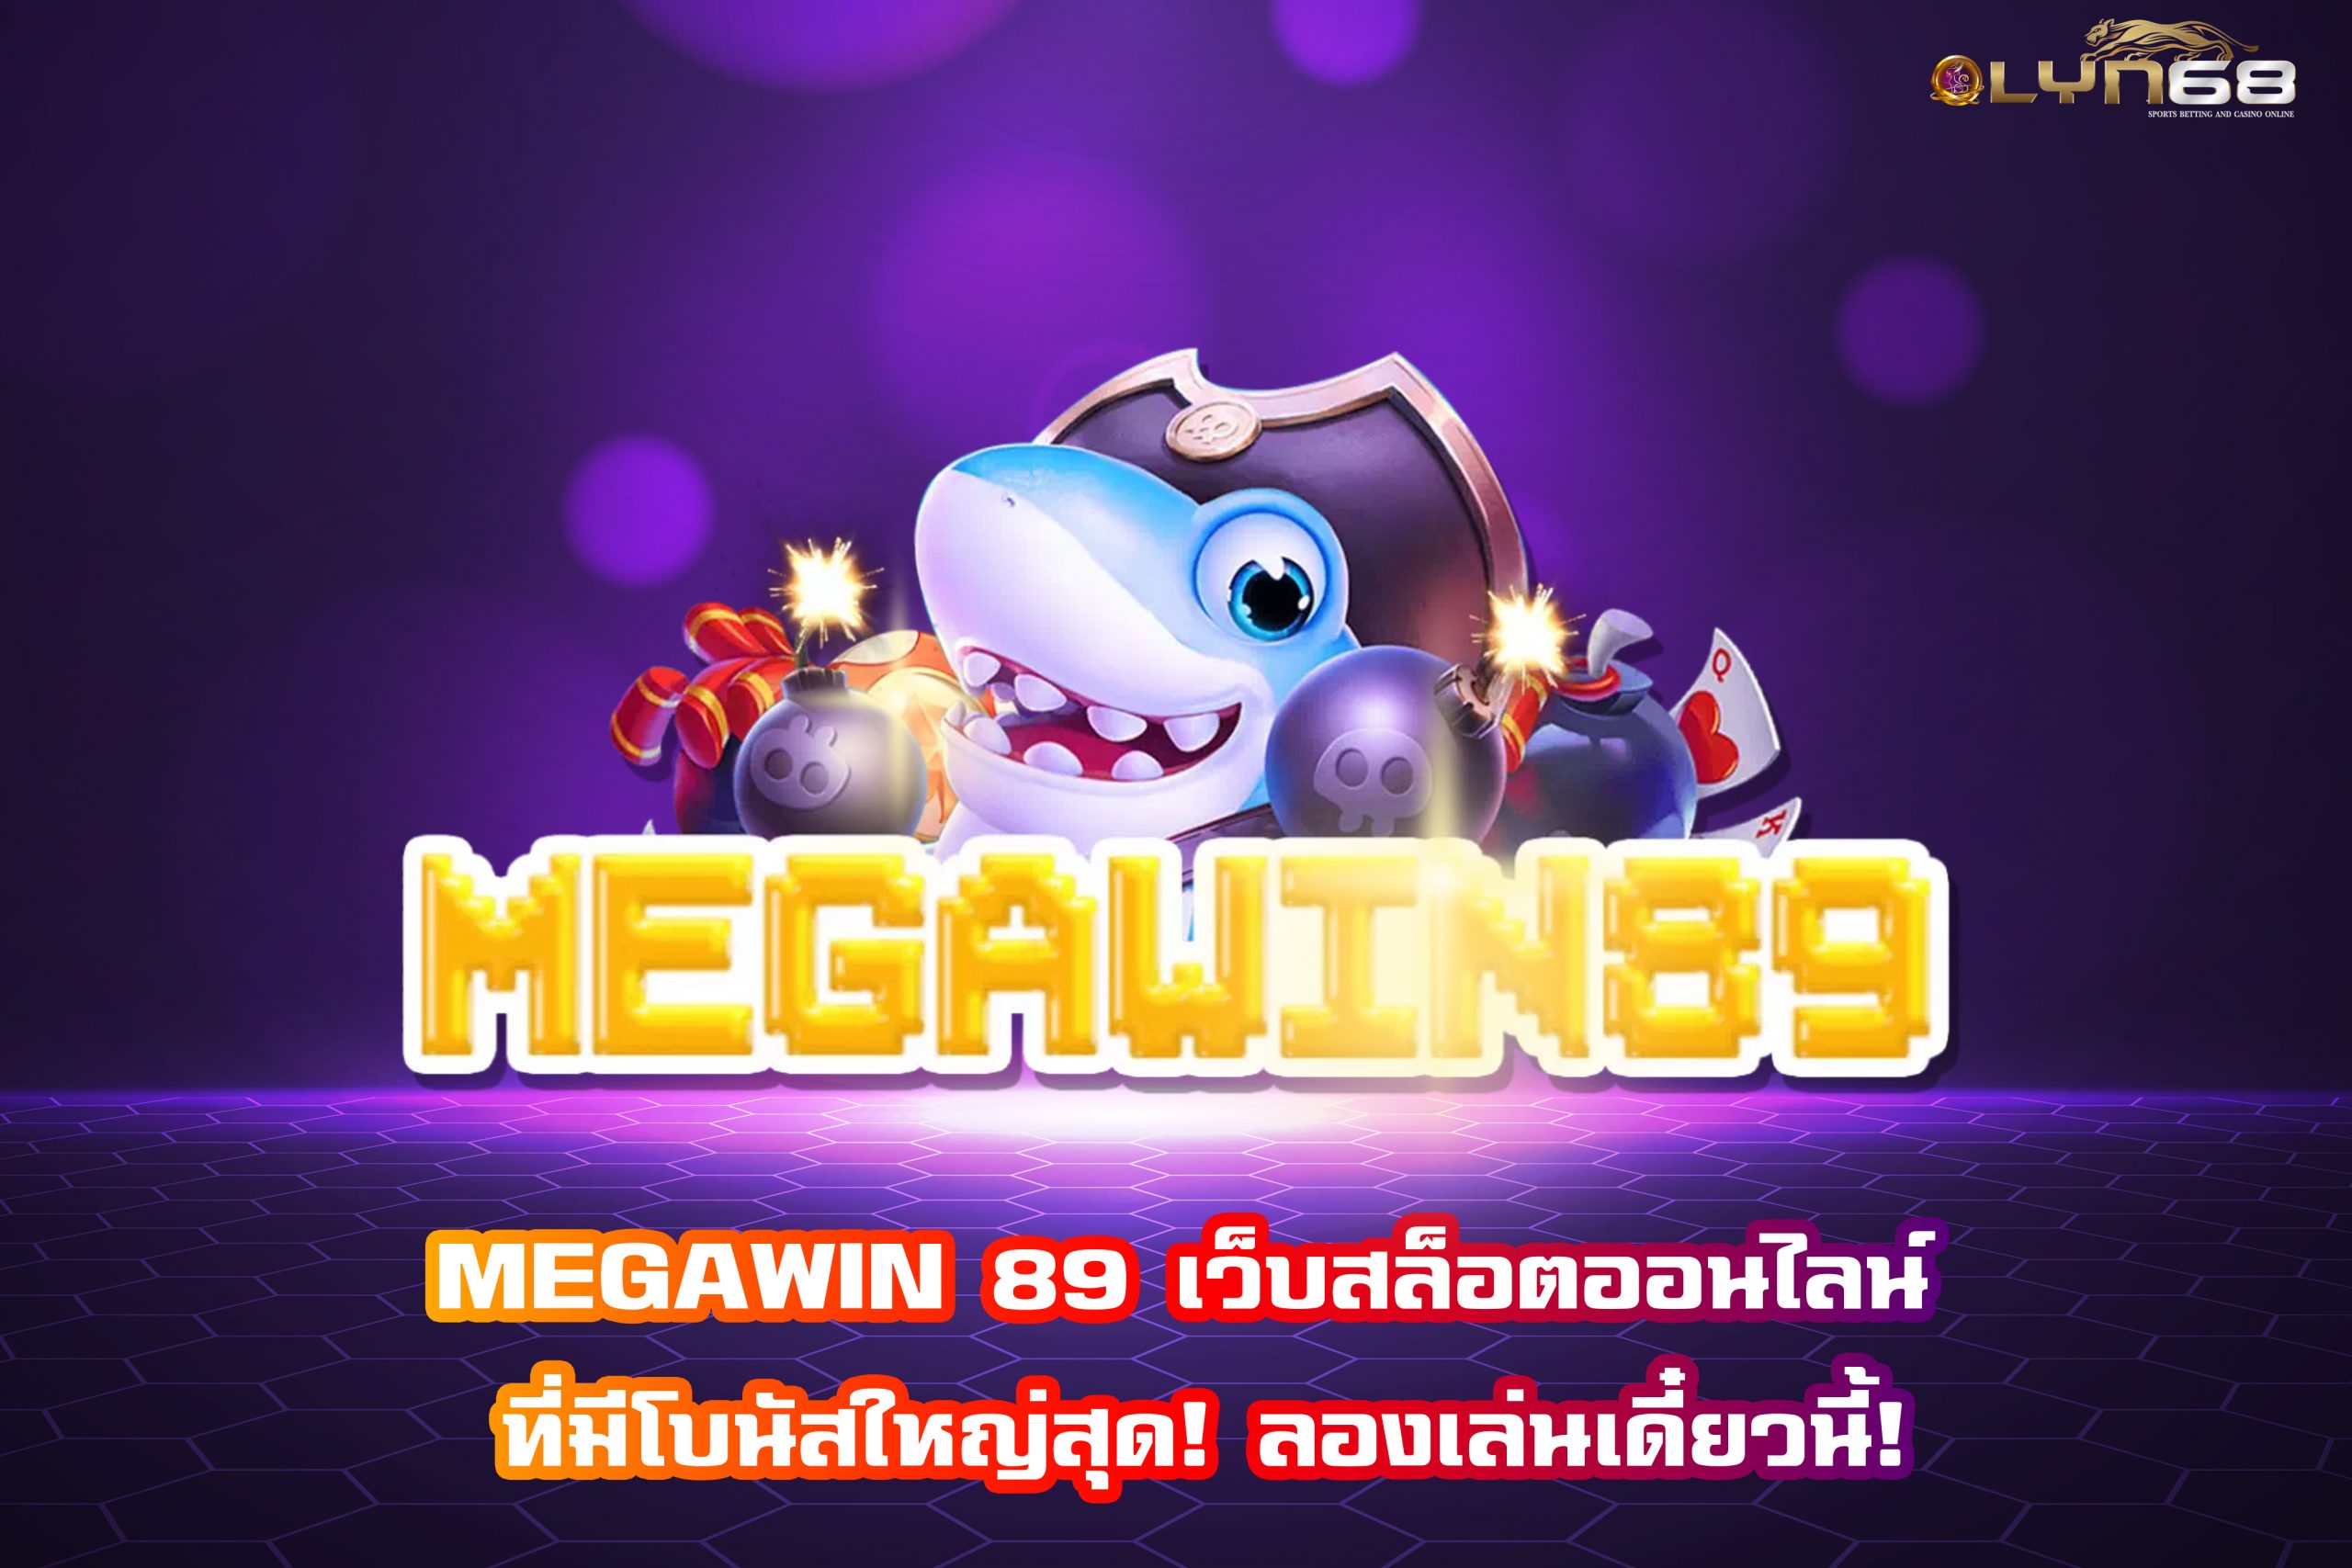 MEGAWIN 89 เว็บสล็อตออนไลน์ ที่มีโบนัสใหญ่สุด! ลองเล่นเดี๋ยวนี้!